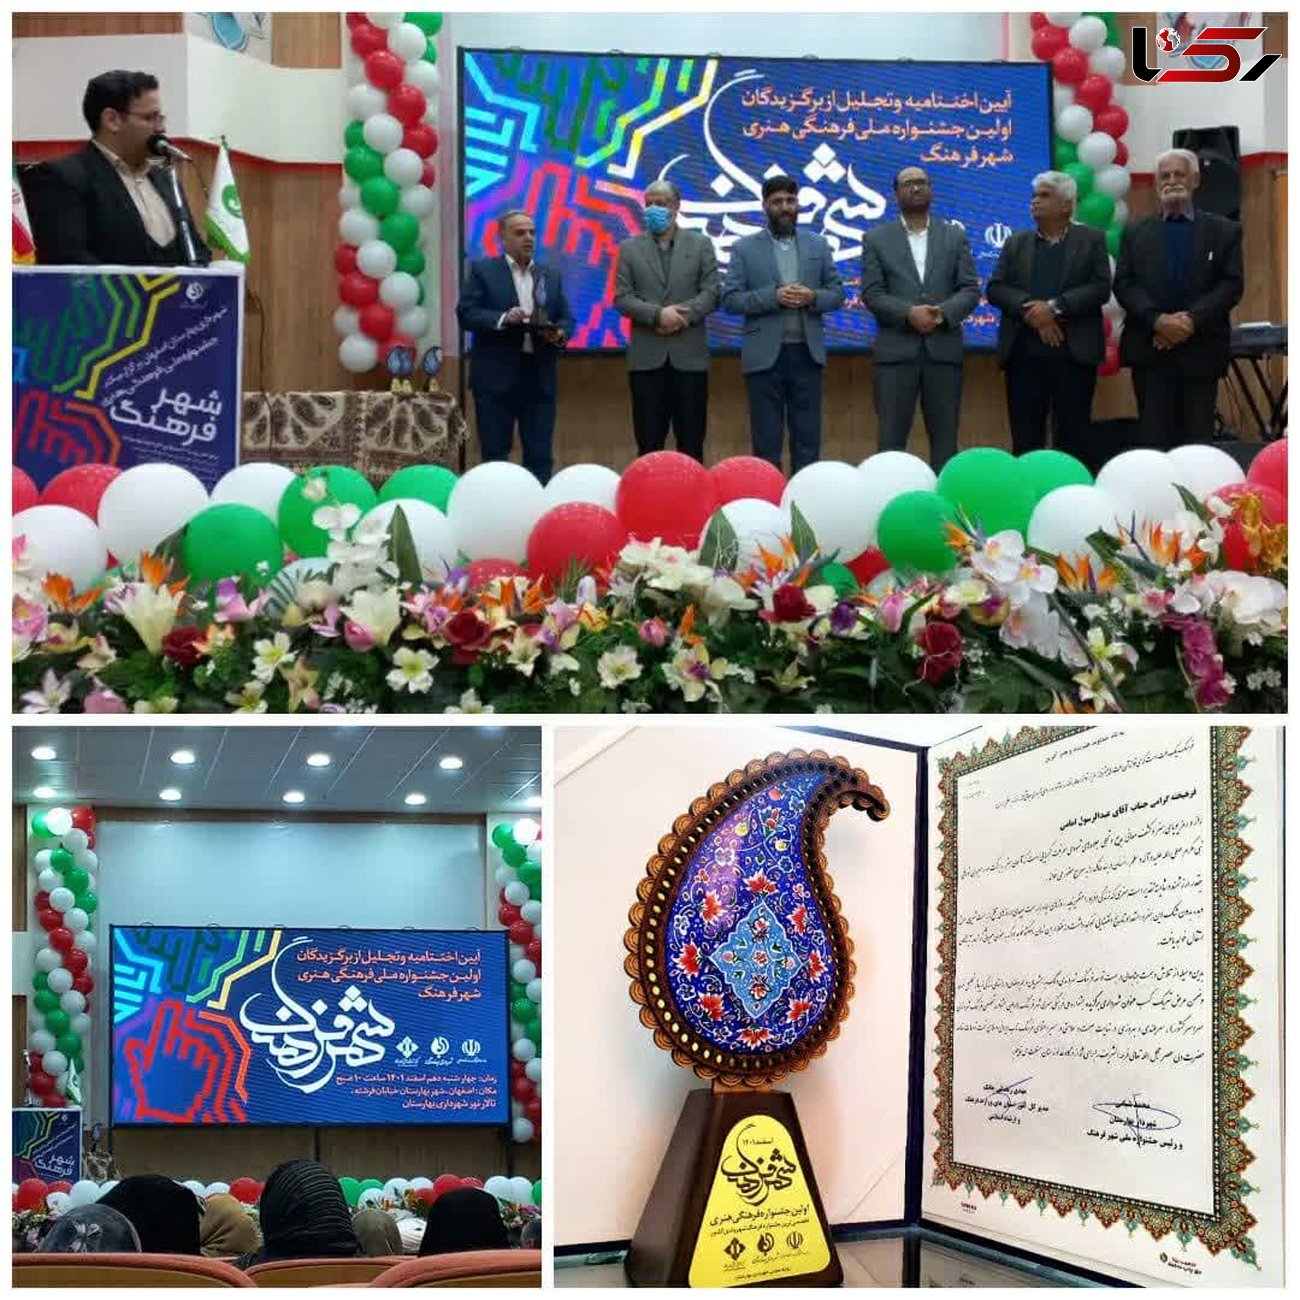 شهرداری نجف آباد برگزیده جشنواره ملی فرهنگی هنری "شهر فرهنگ" کشور شد.